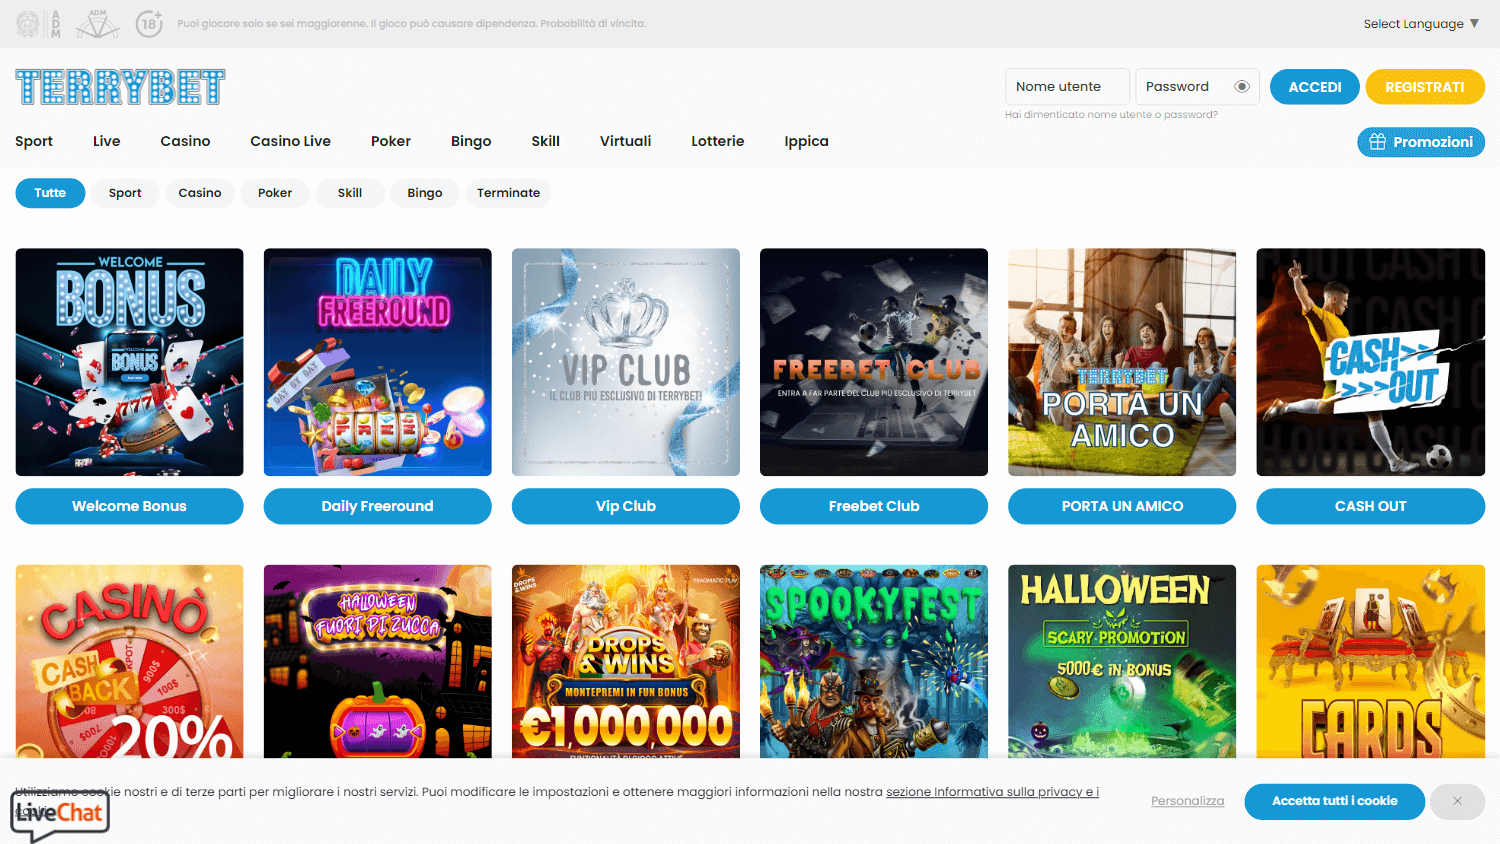 terrybet_casino_promotions_desktop